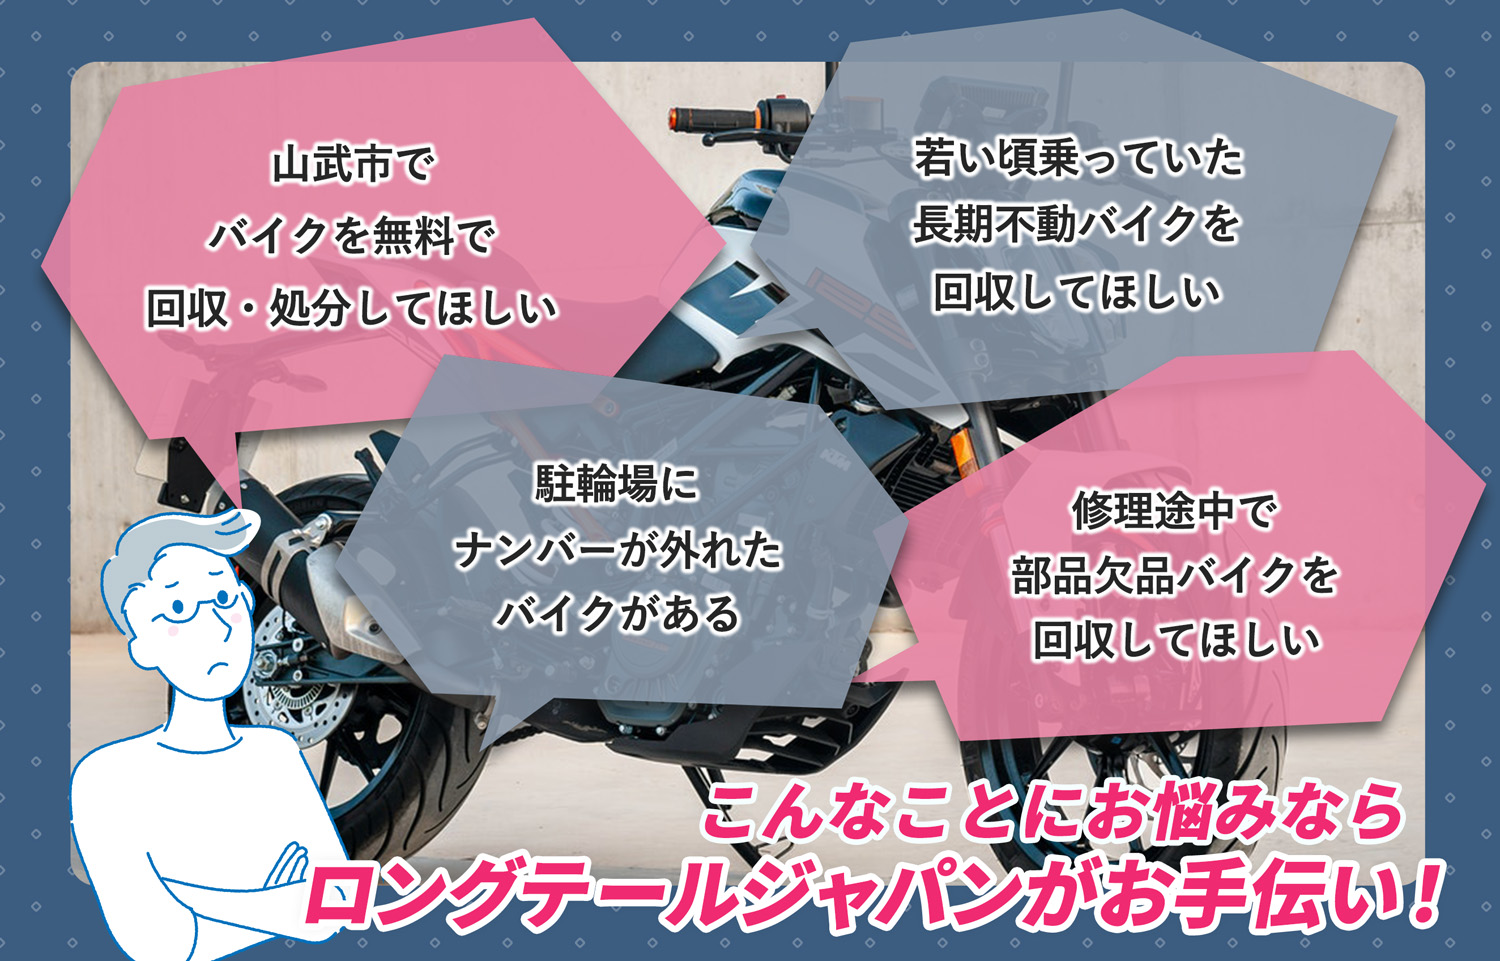 山武市でこんなバイクの処分にお困りでしたらバイク無料回収処分隊がお手伝いいたします。